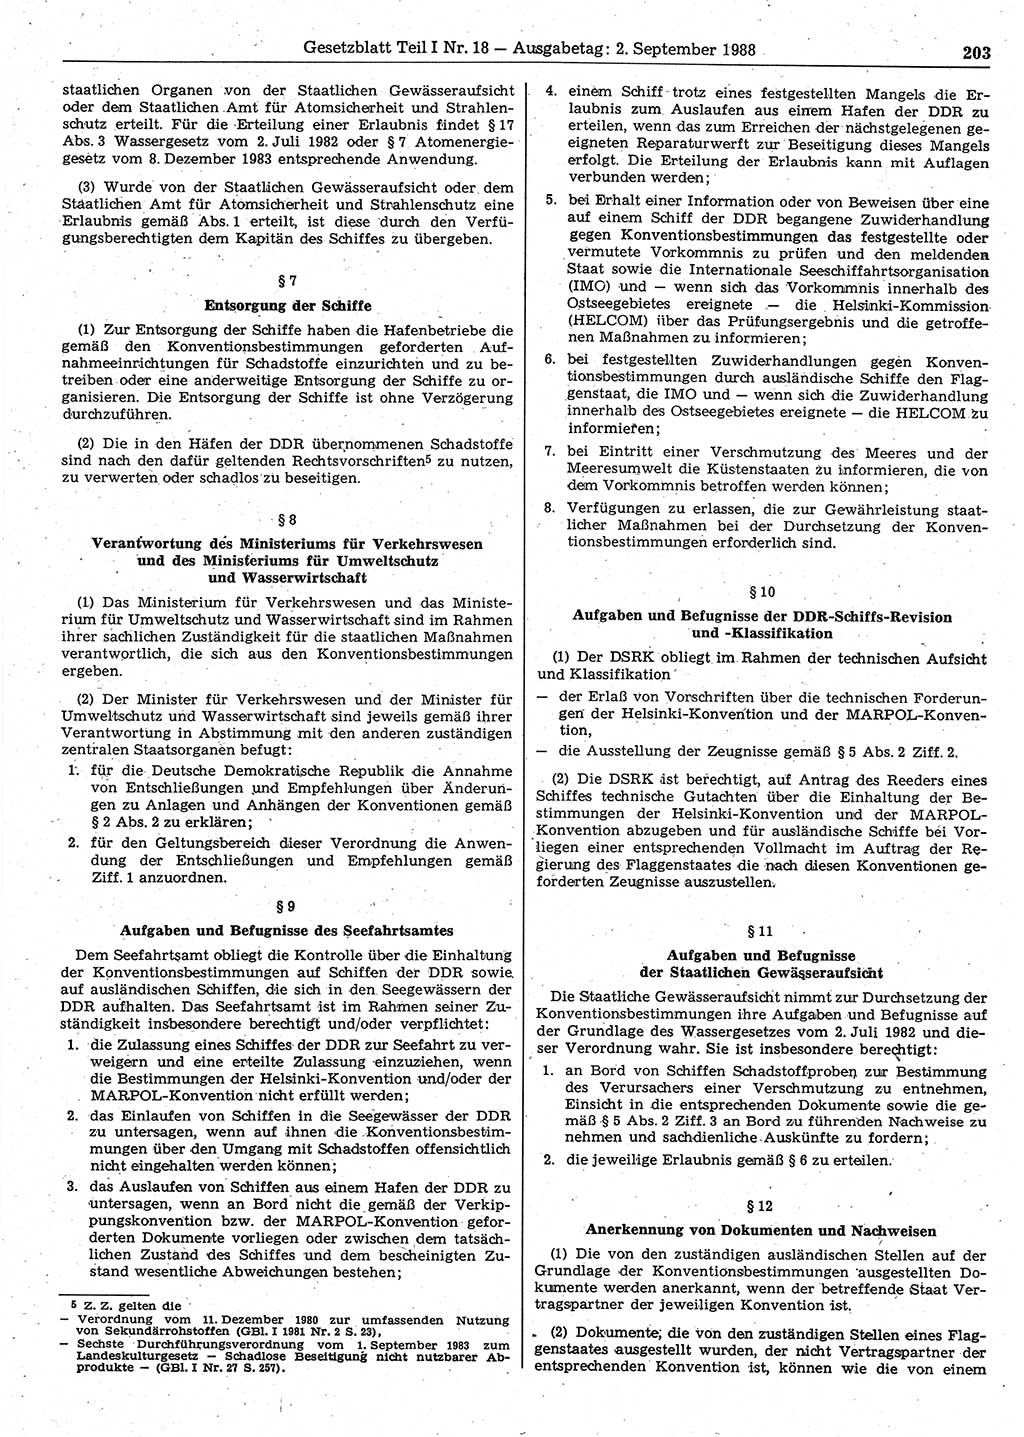 Gesetzblatt (GBl.) der Deutschen Demokratischen Republik (DDR) Teil Ⅰ 1988, Seite 203 (GBl. DDR Ⅰ 1988, S. 203)